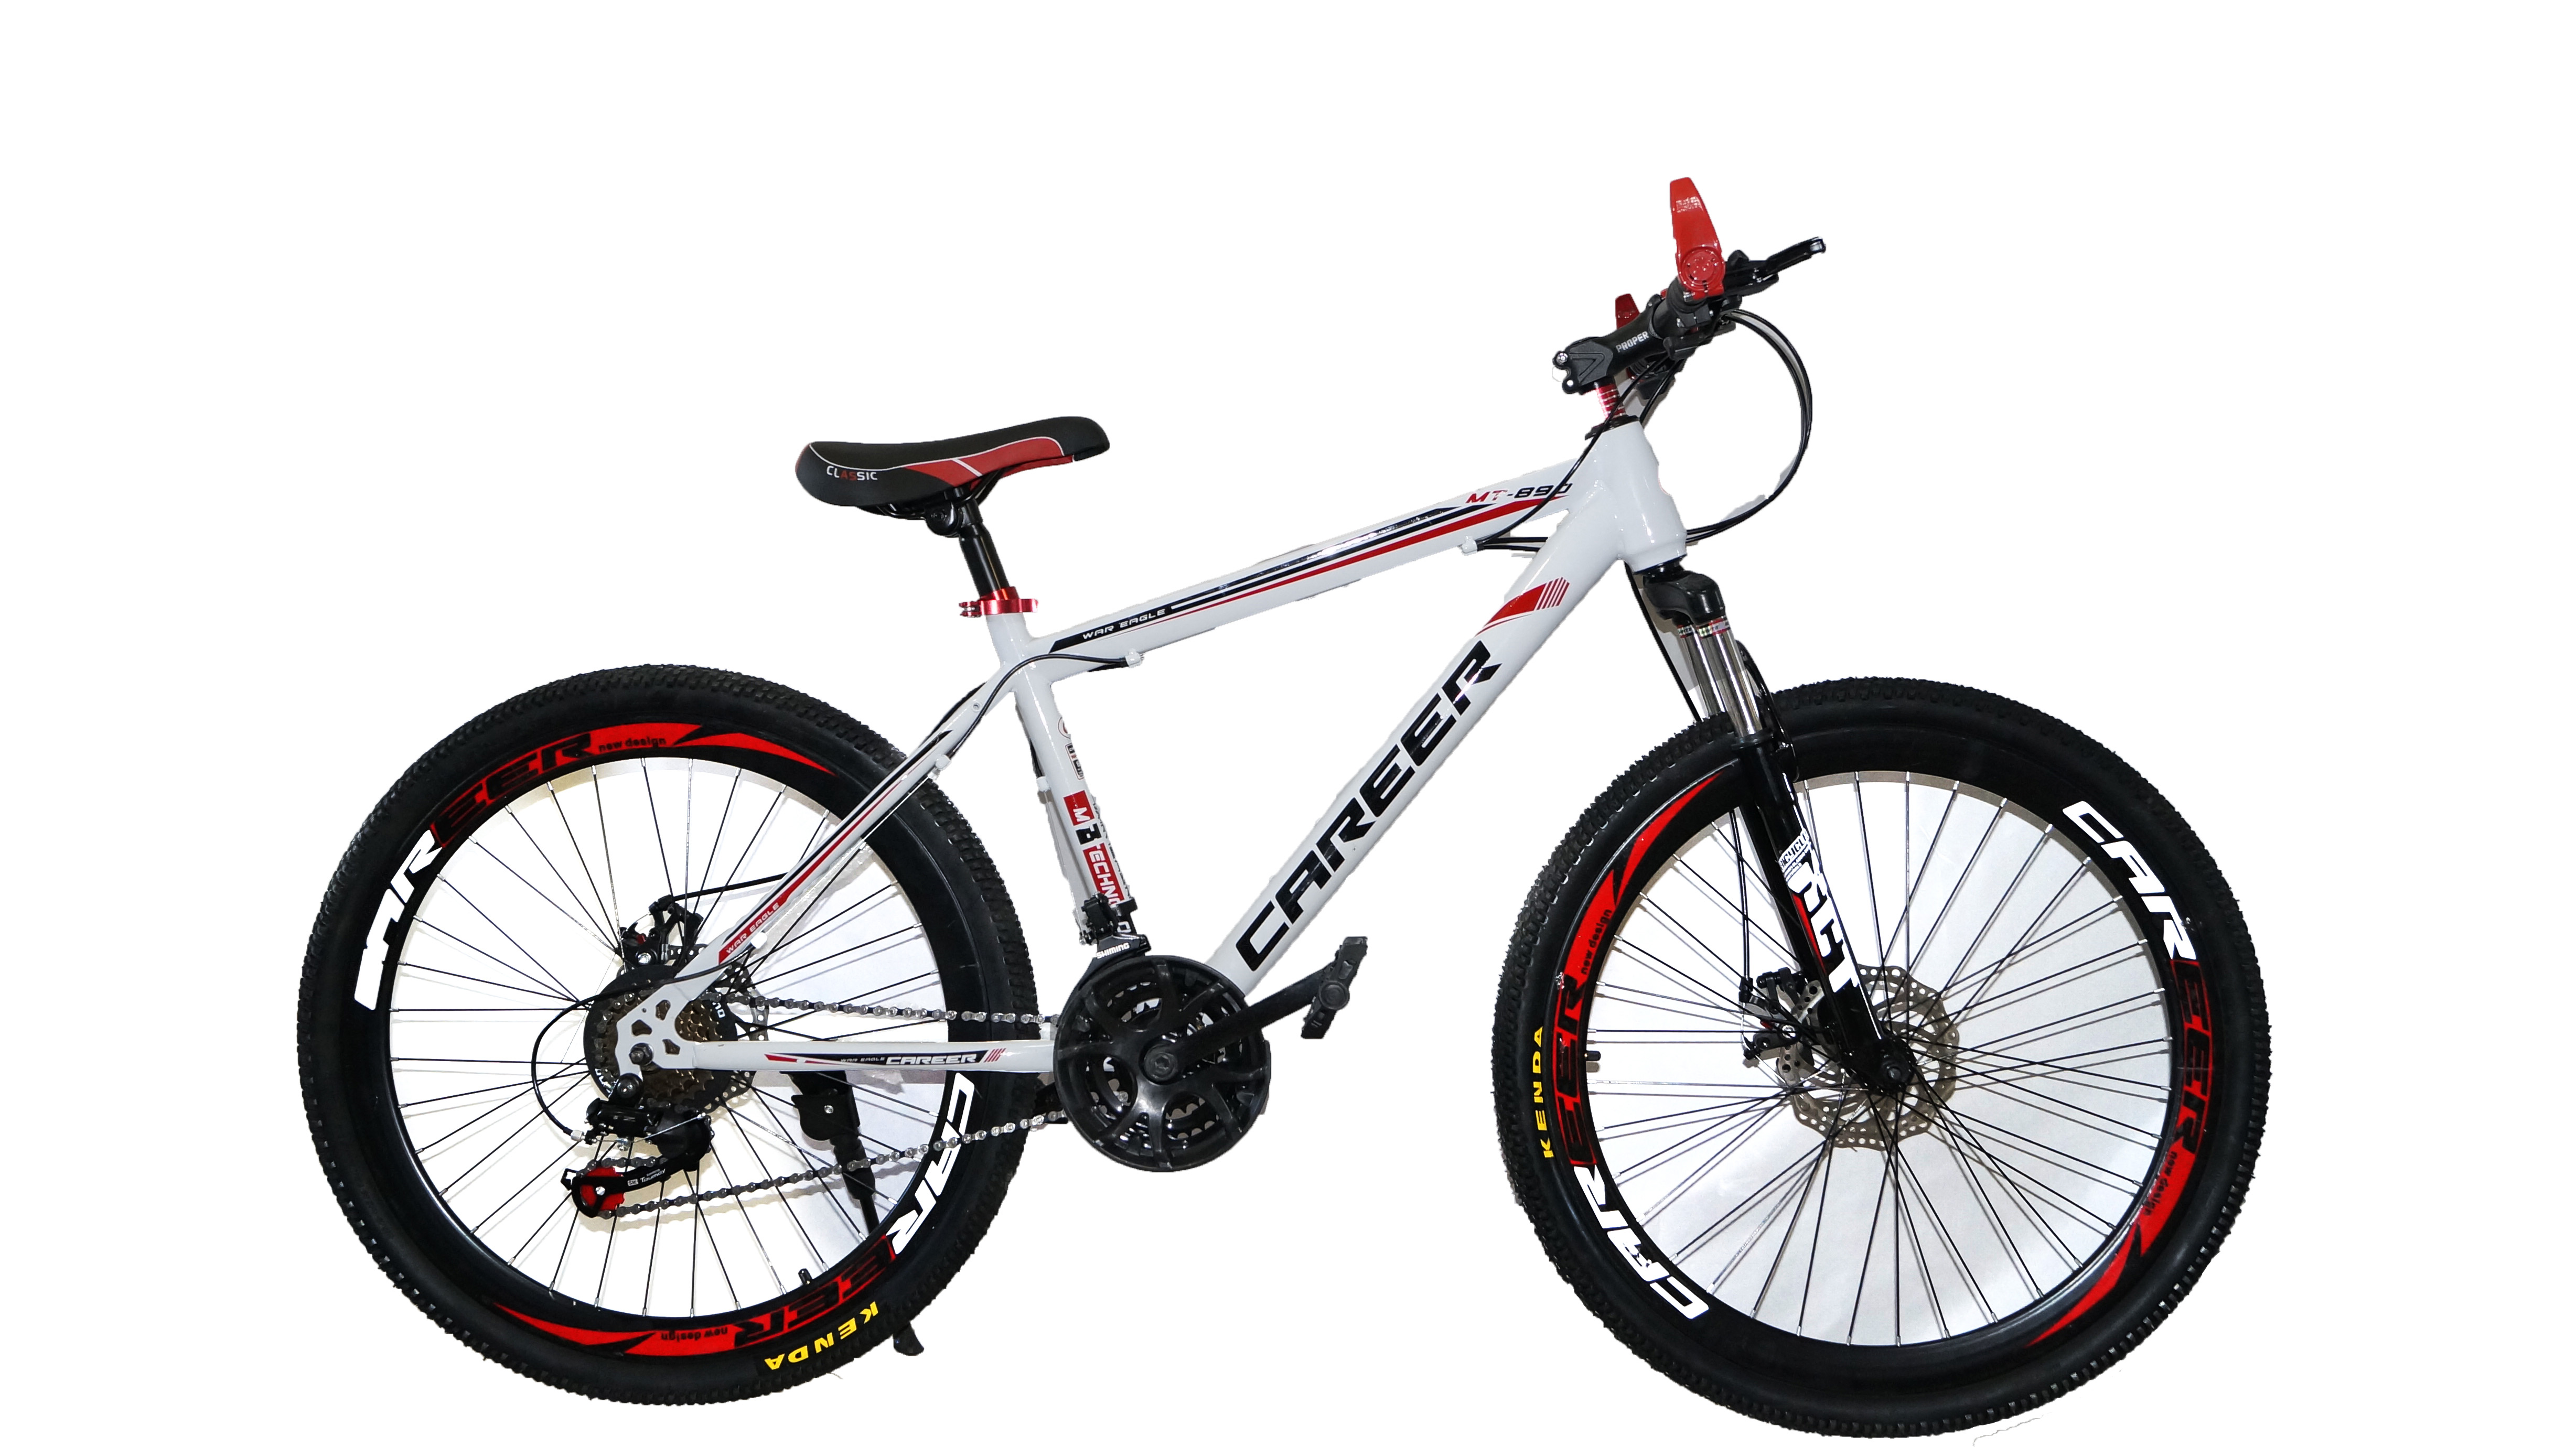 Велосипед купить набережные. Велосипед Energy e01, 26 дюймов, 21 скорость, (черно-красный). Велосипед Dream c680. Велосипед career c680 характеристики. Велосипед Drive Dr-797.